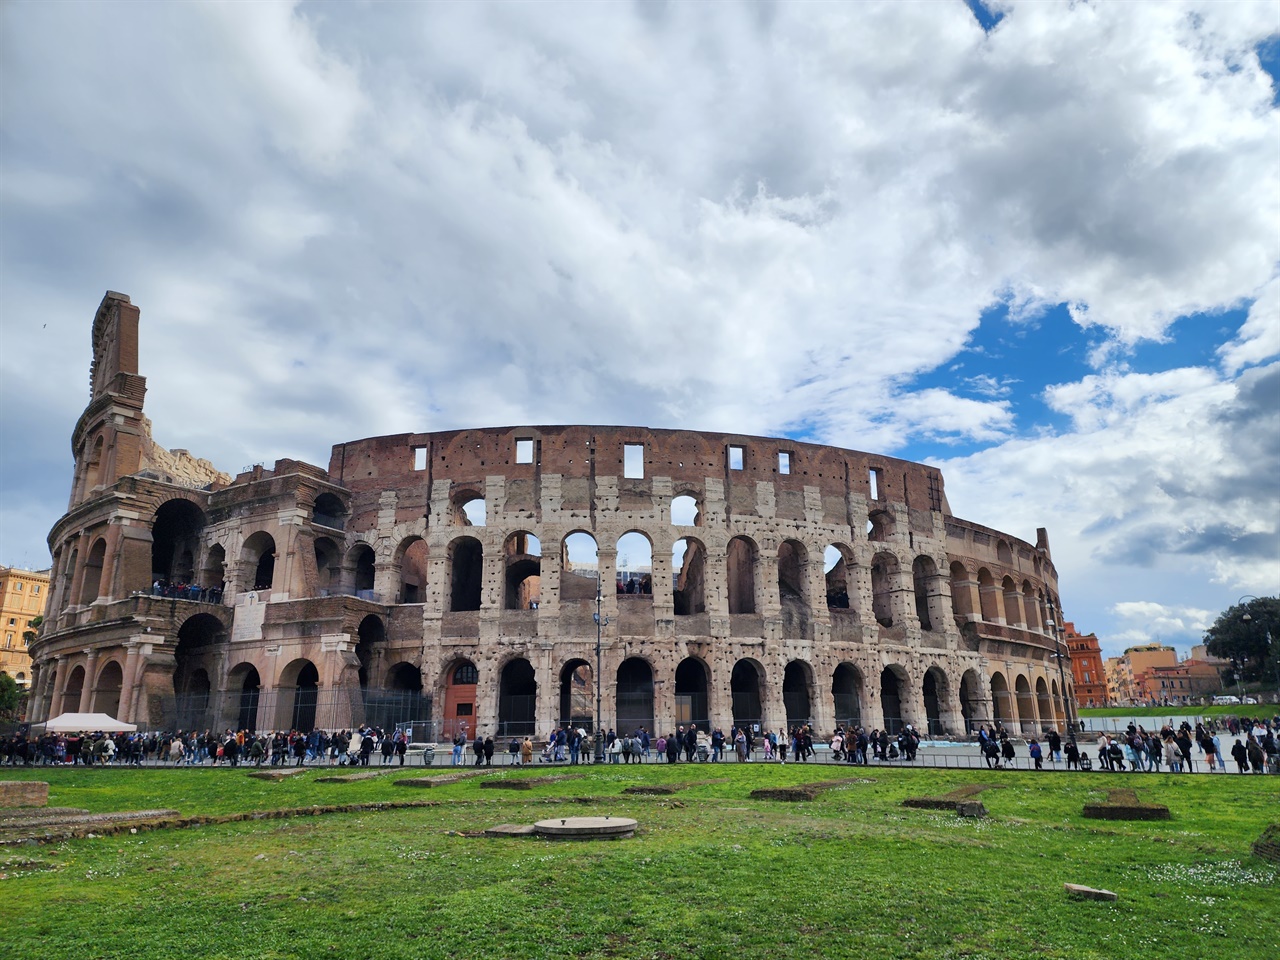 로마의 랜드마크, 전쟁 포로인 검투사와 맹수의 전투 경기가 벌어진 원형 경기장으로 약 2천년 전에 지어졌다.